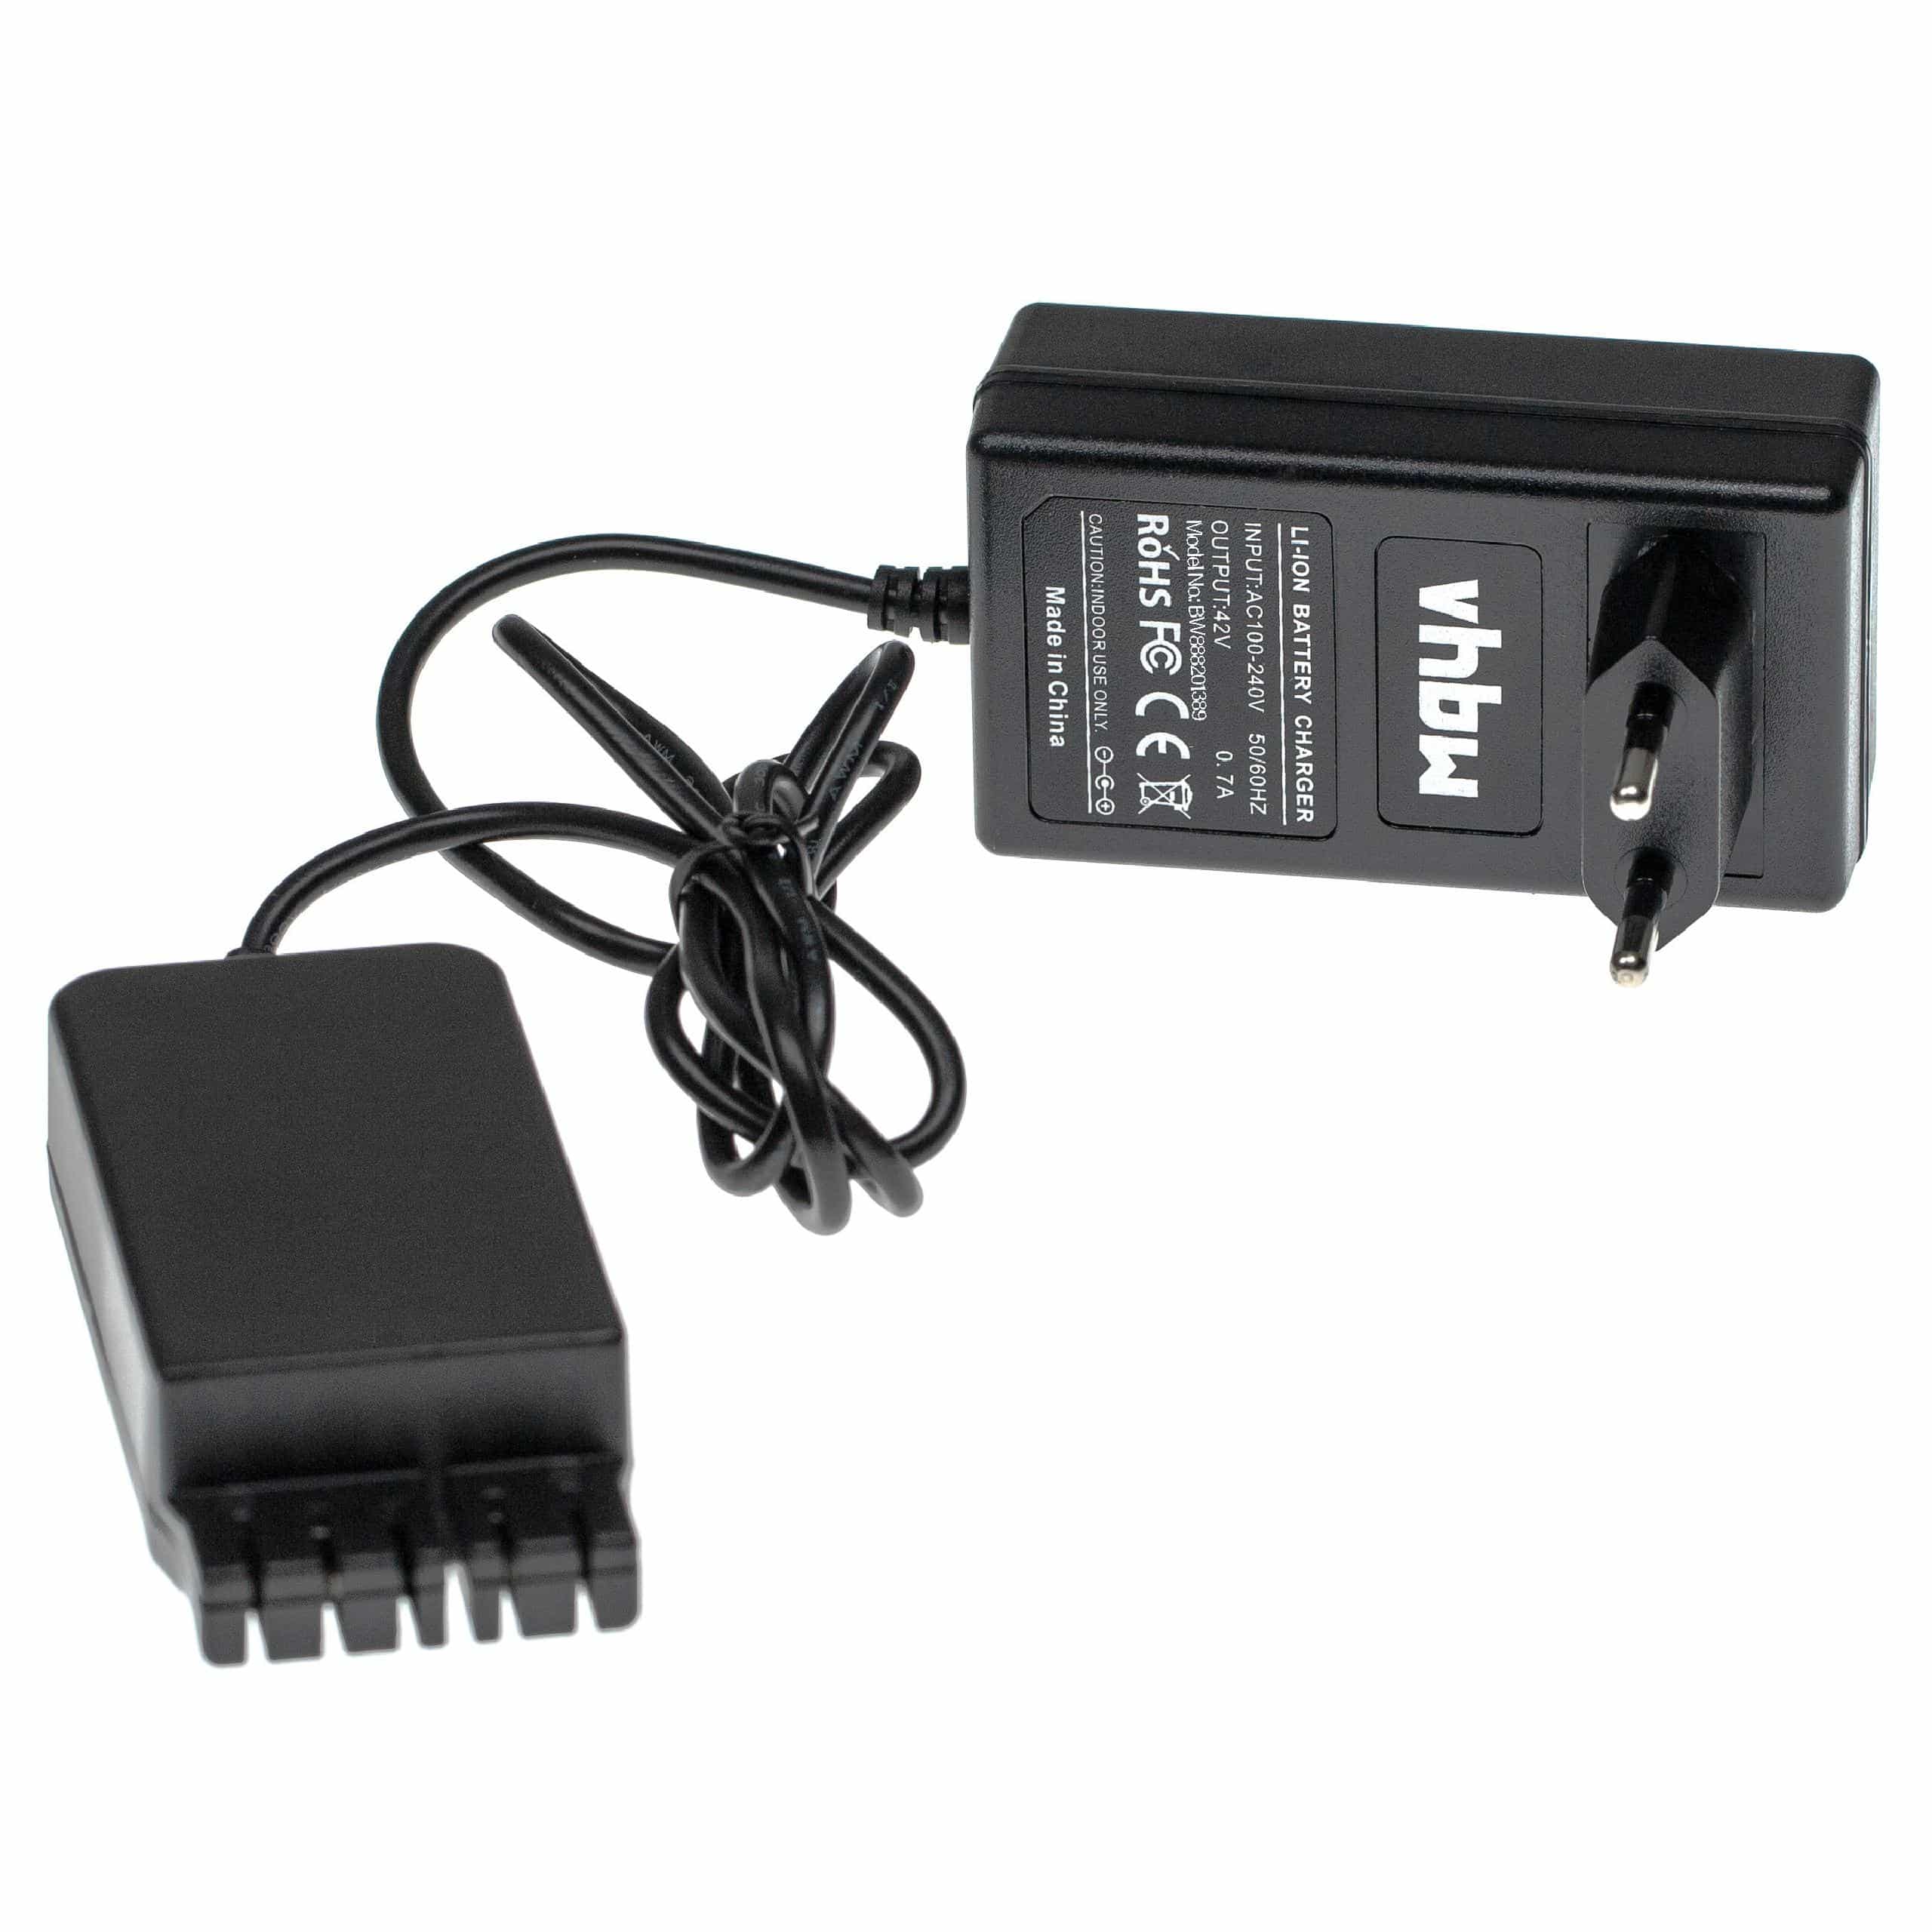 Chargeur avec alimentation pour batterie d'outil électrique , Hilti B36